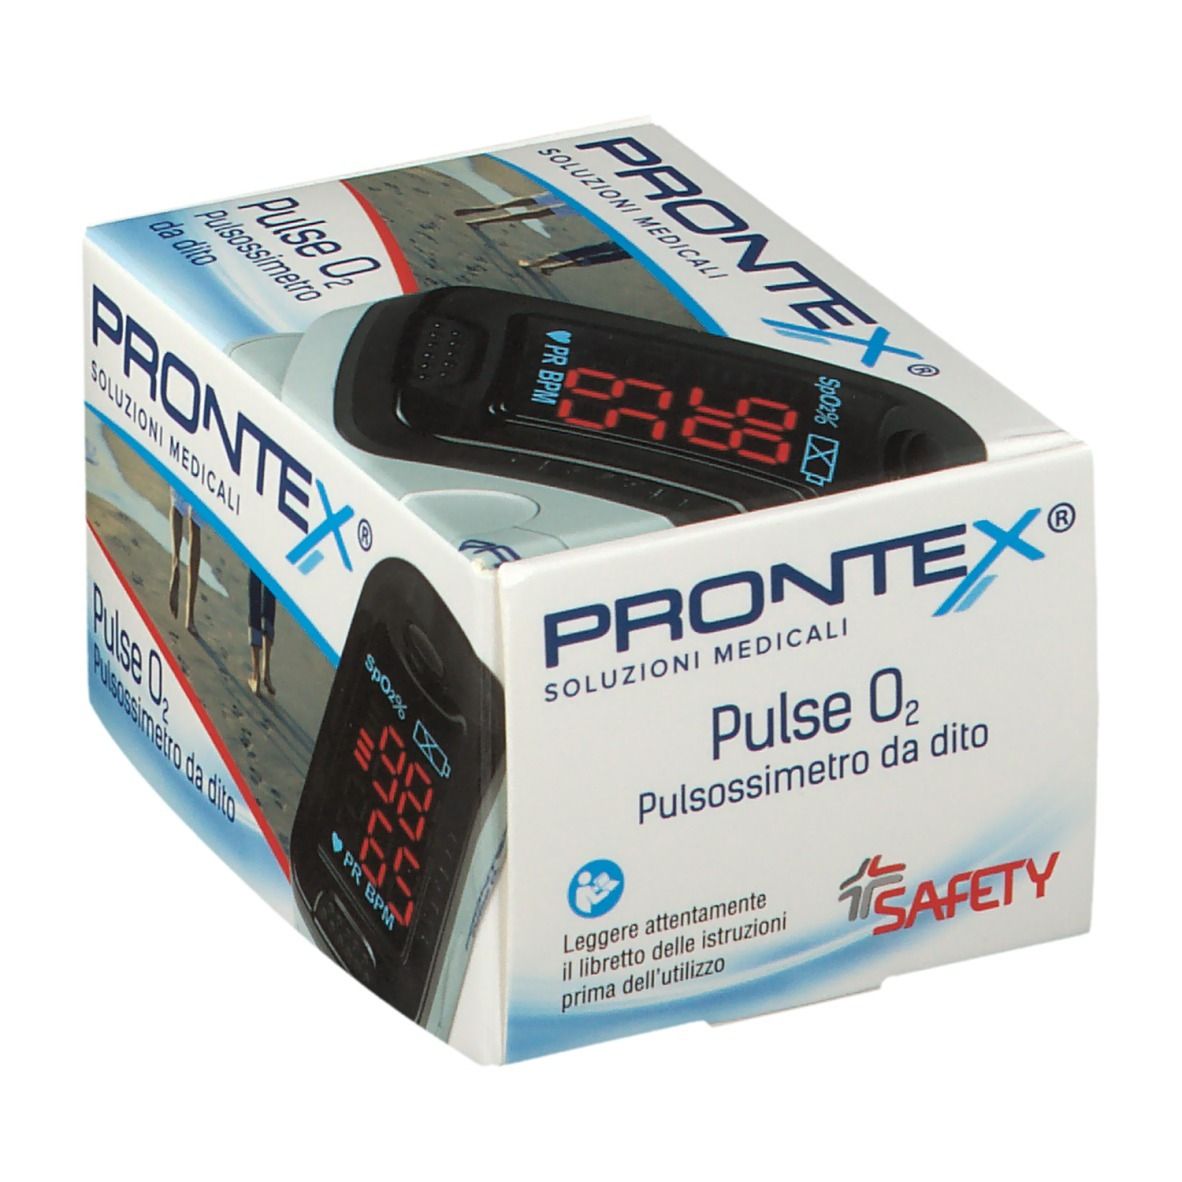 PRONTEX® Pluse O2 Pulsossimetro da Dito